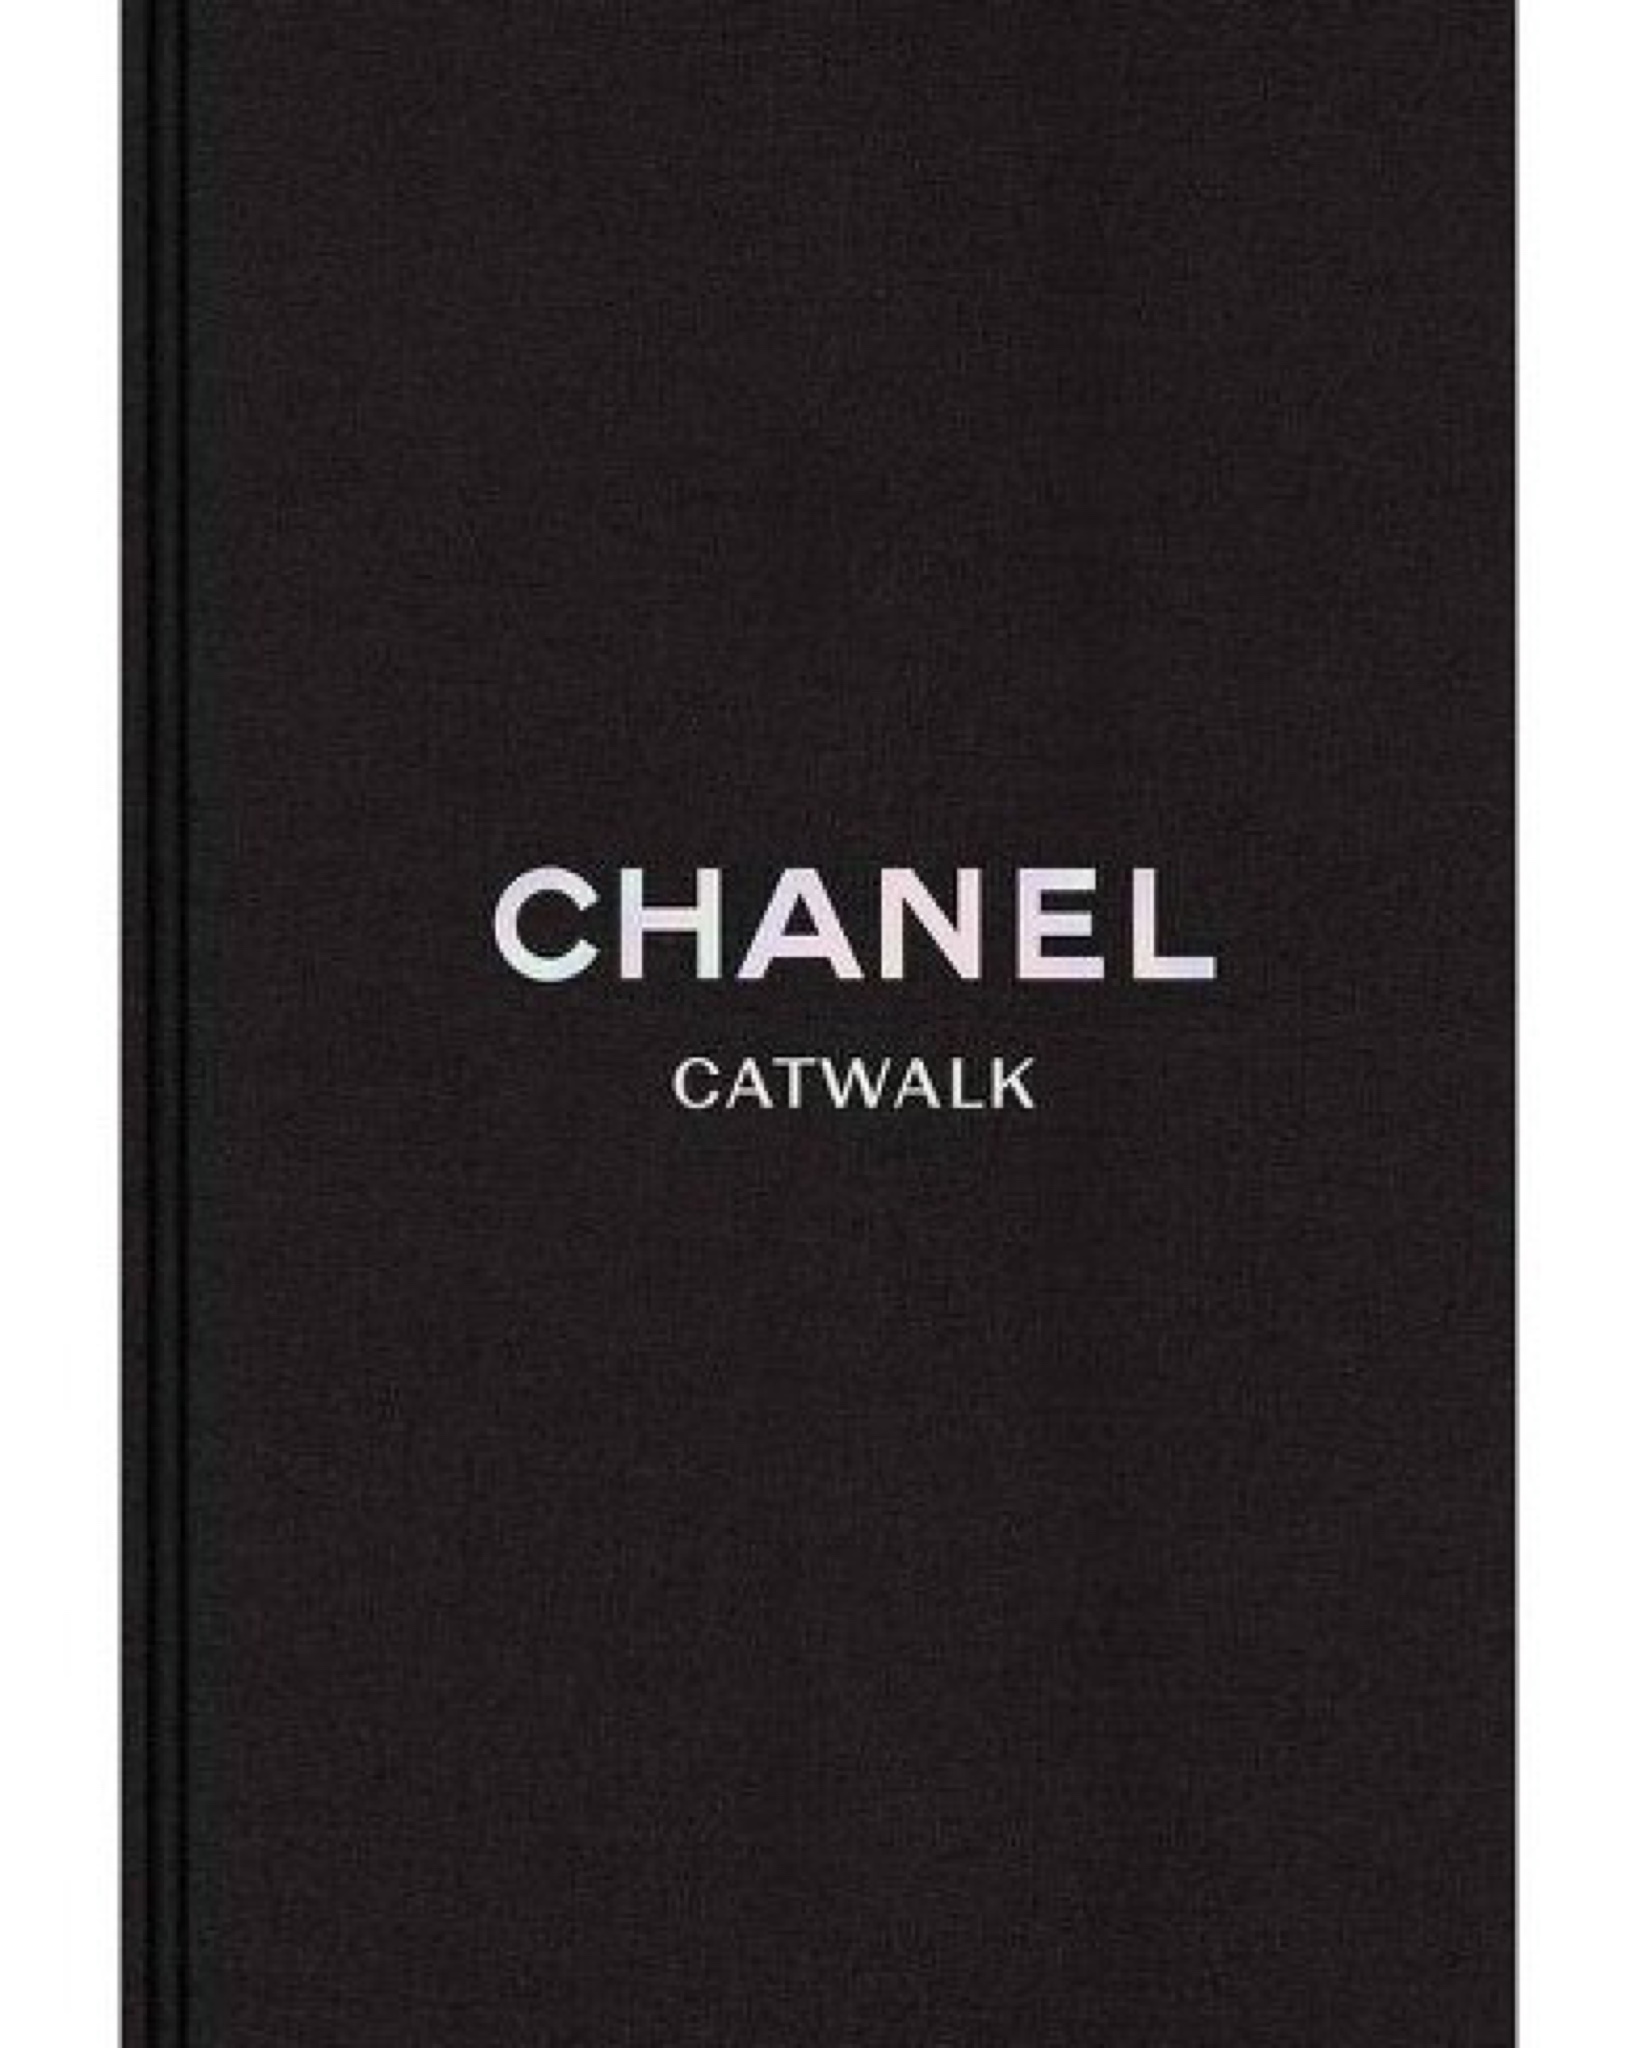 Chanel Catwalk Book - Héas